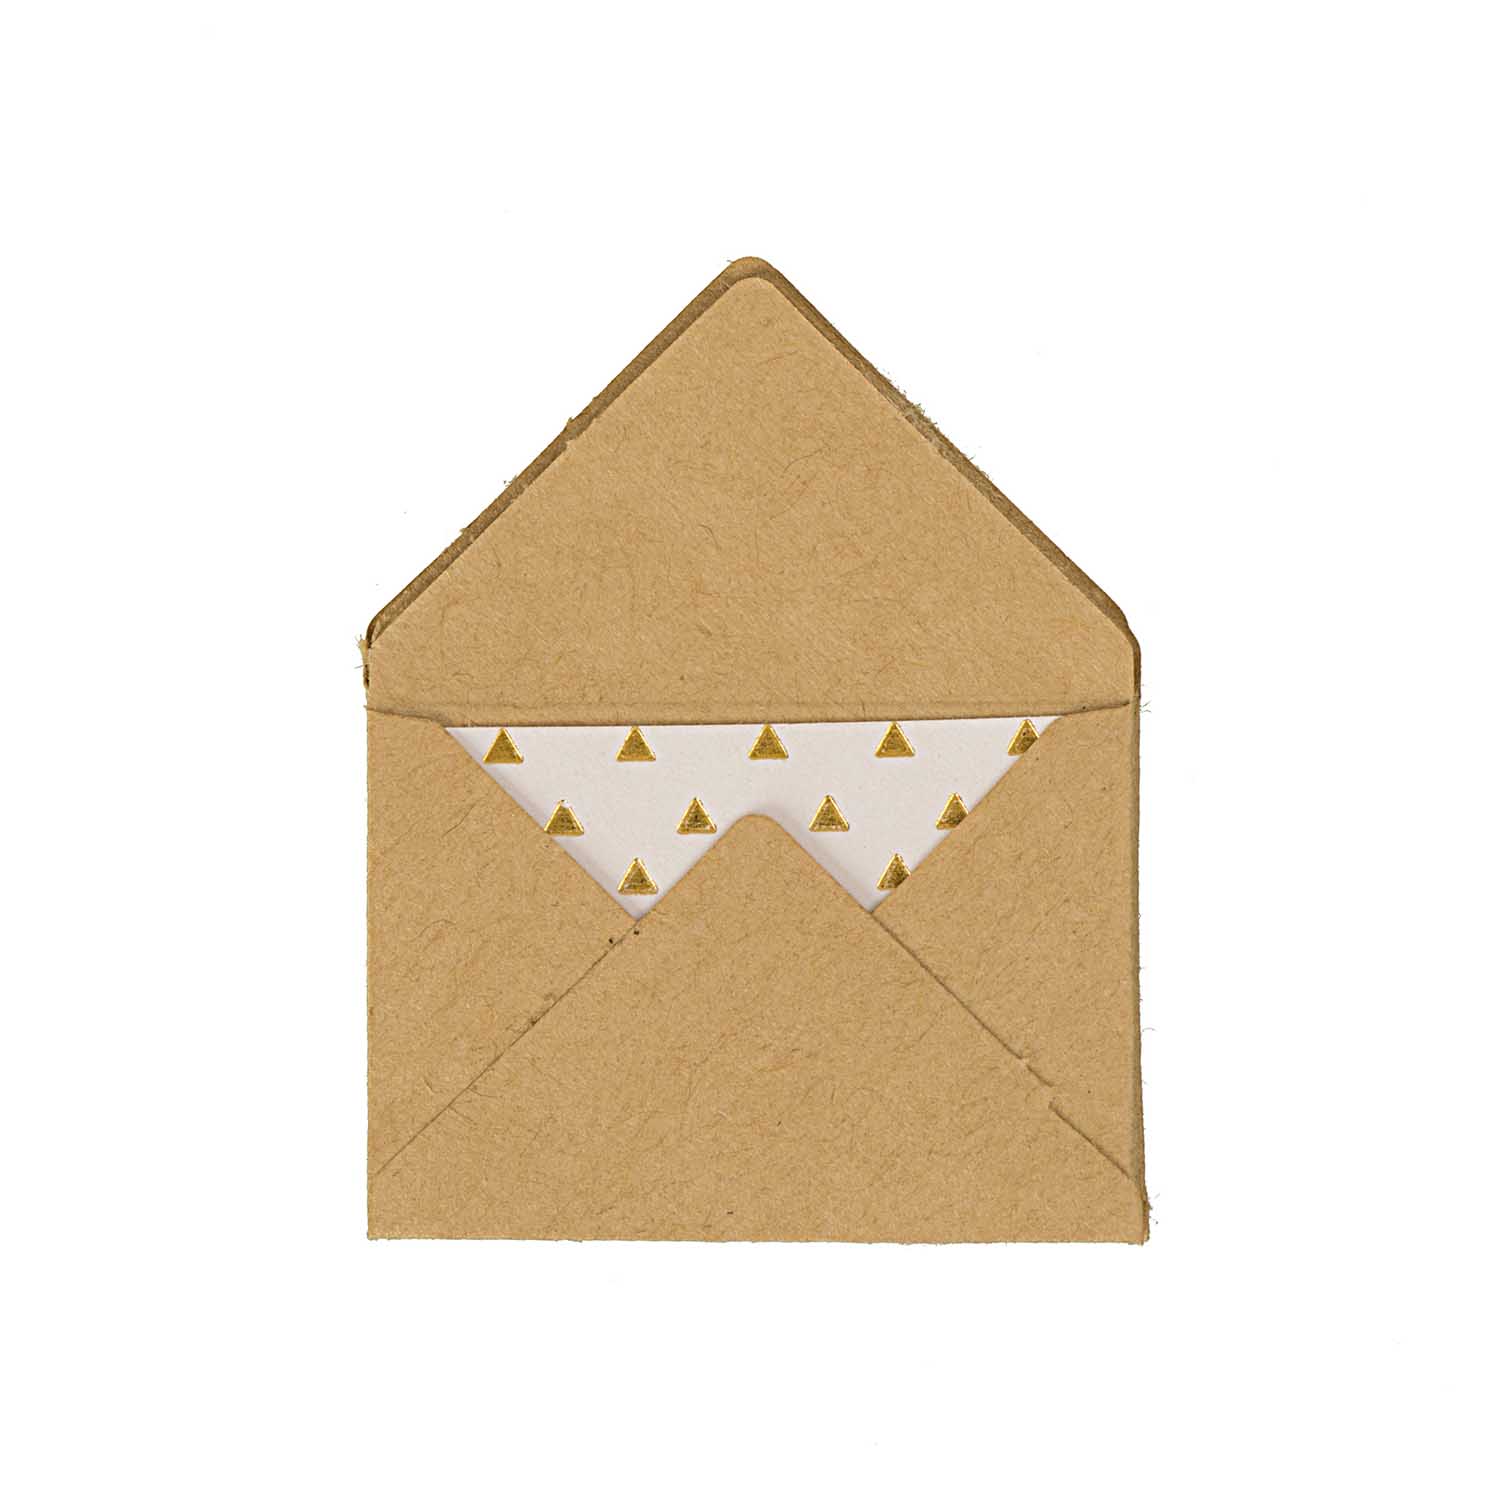 NEU Mini Briefumschläge & Karten, 3 x 4,5 cm, 10 Stück, Kraftpapier - Hot Foil Gold